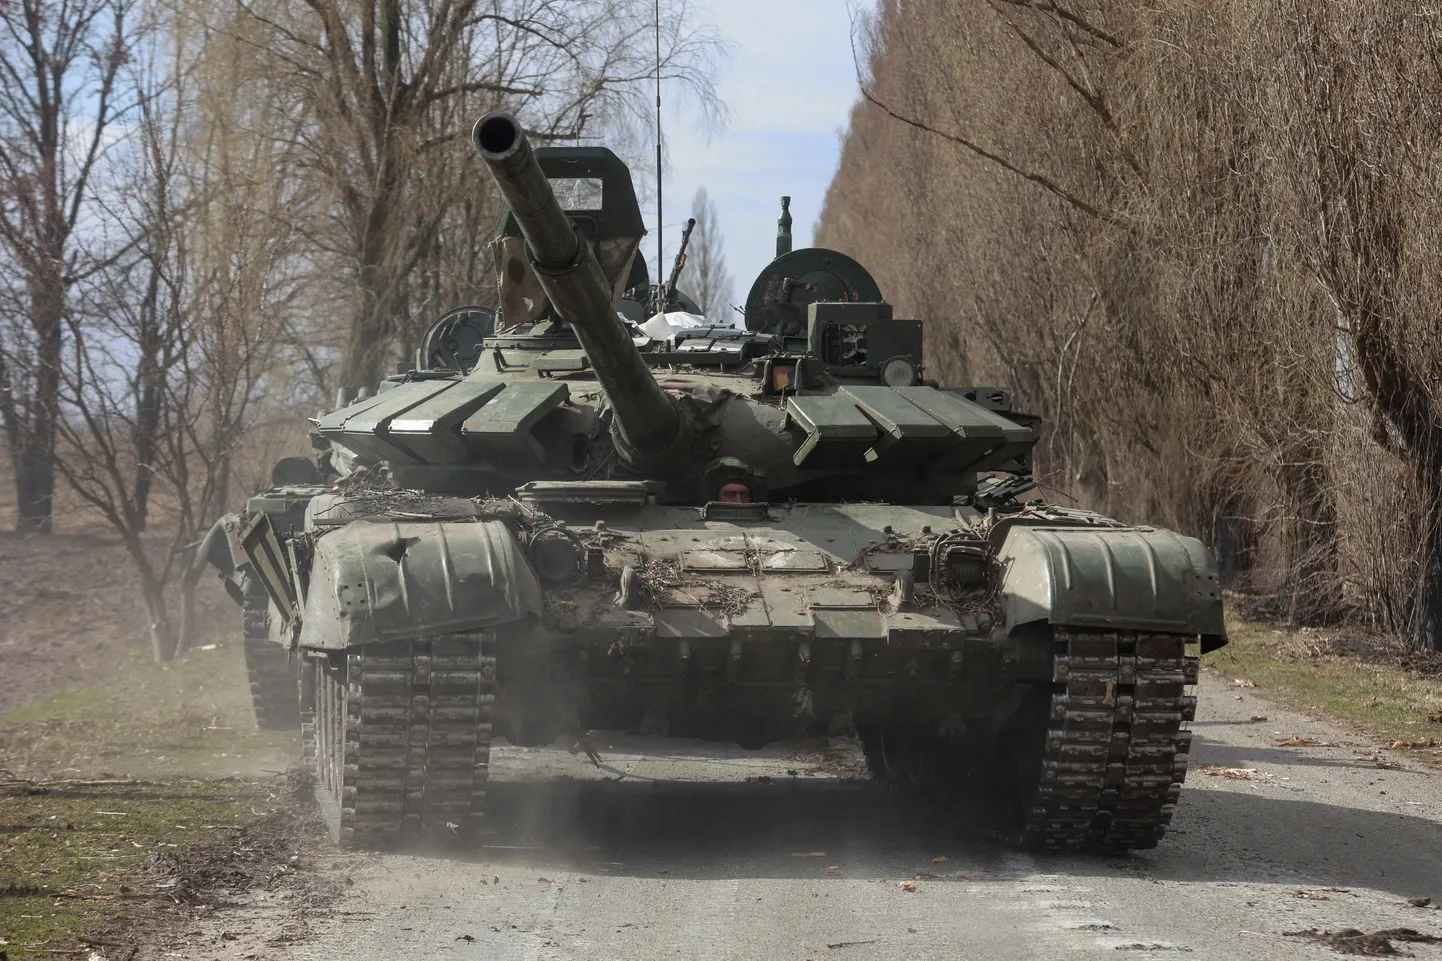 Tanks "T-72".